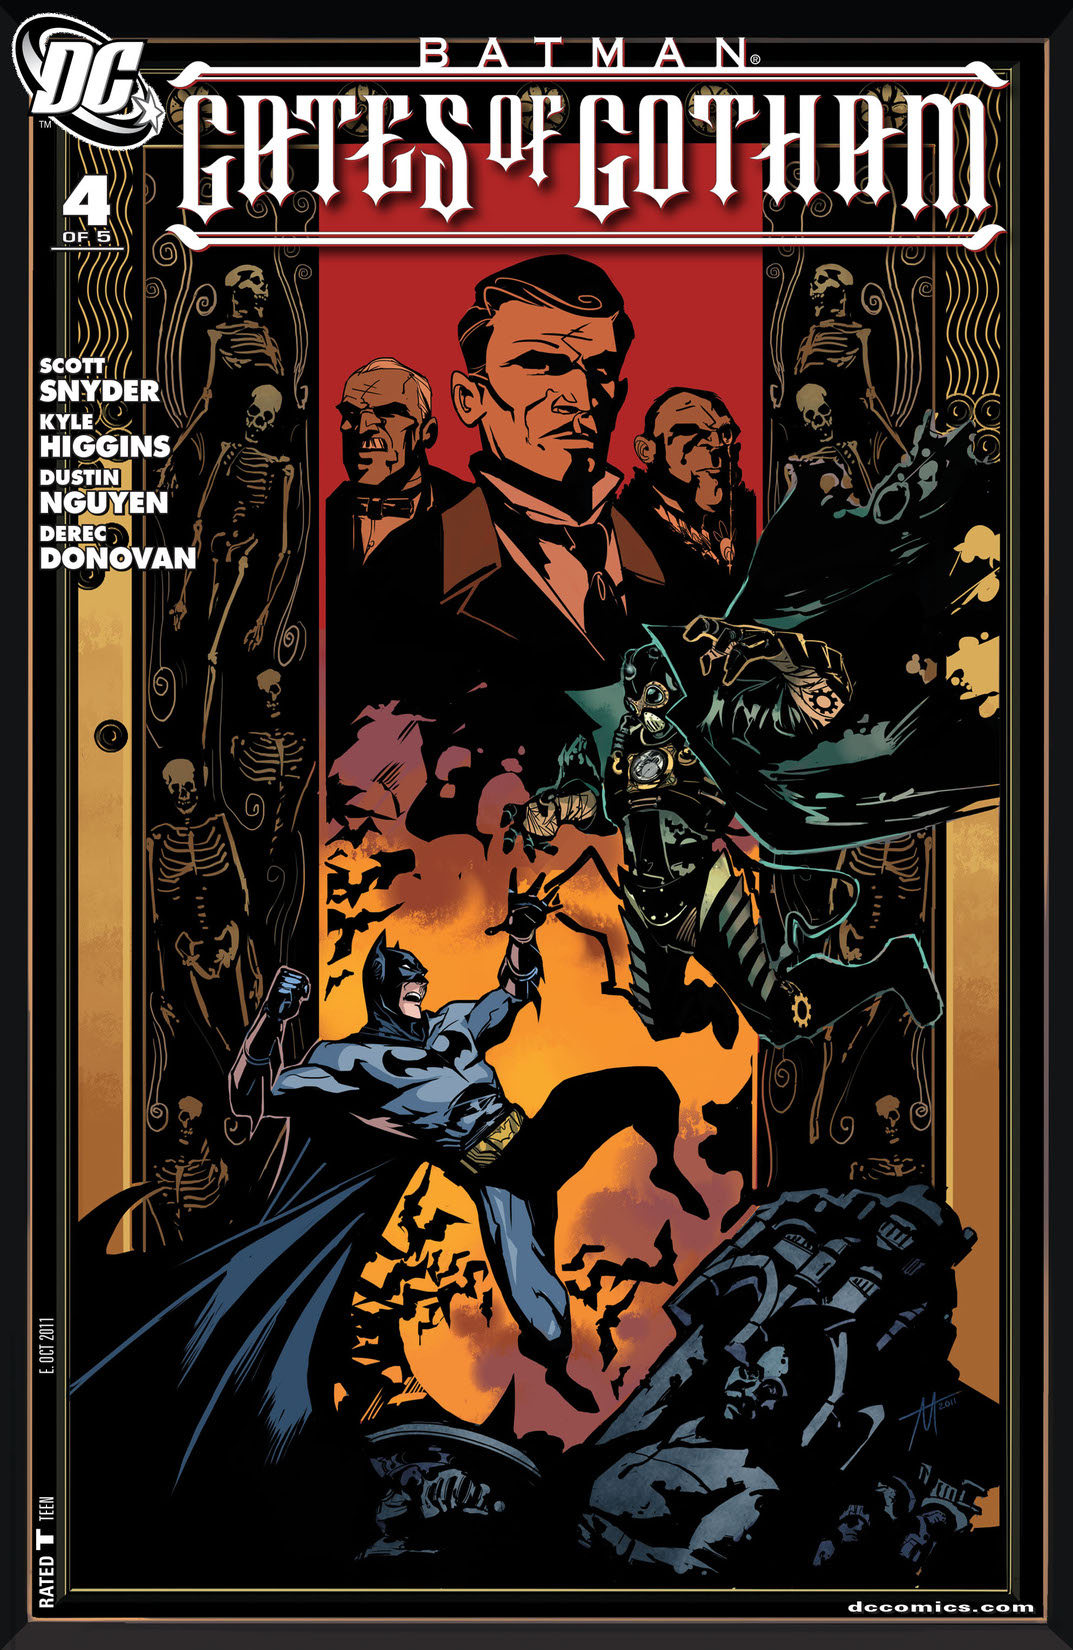 Batman: Gates of Gotham #4 preview images